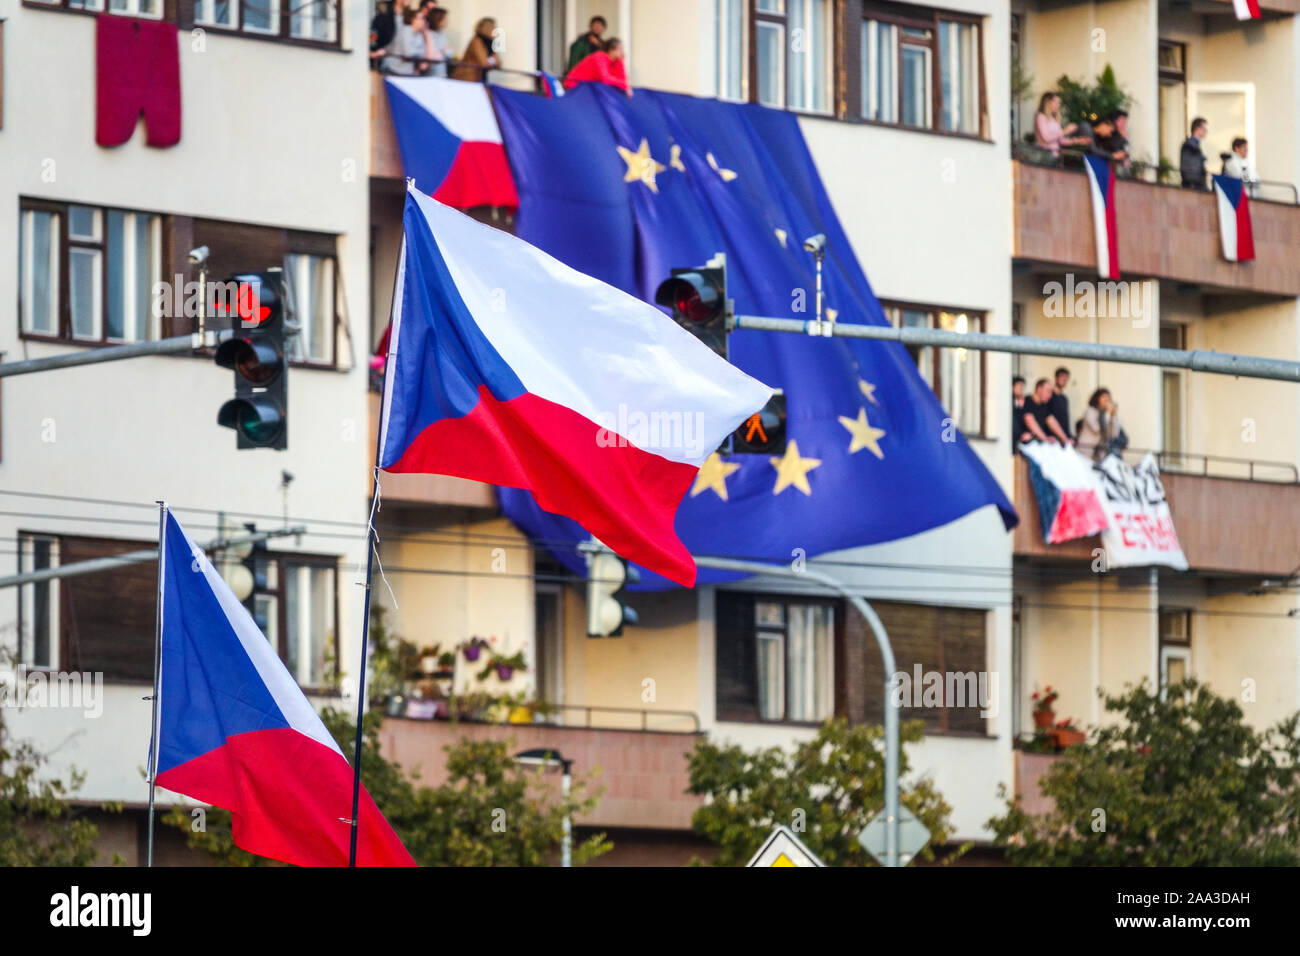 République tchèque drapeaux et grand drapeau de l'Union européenne protestent Letna Prague République Tchèque Banque D'Images